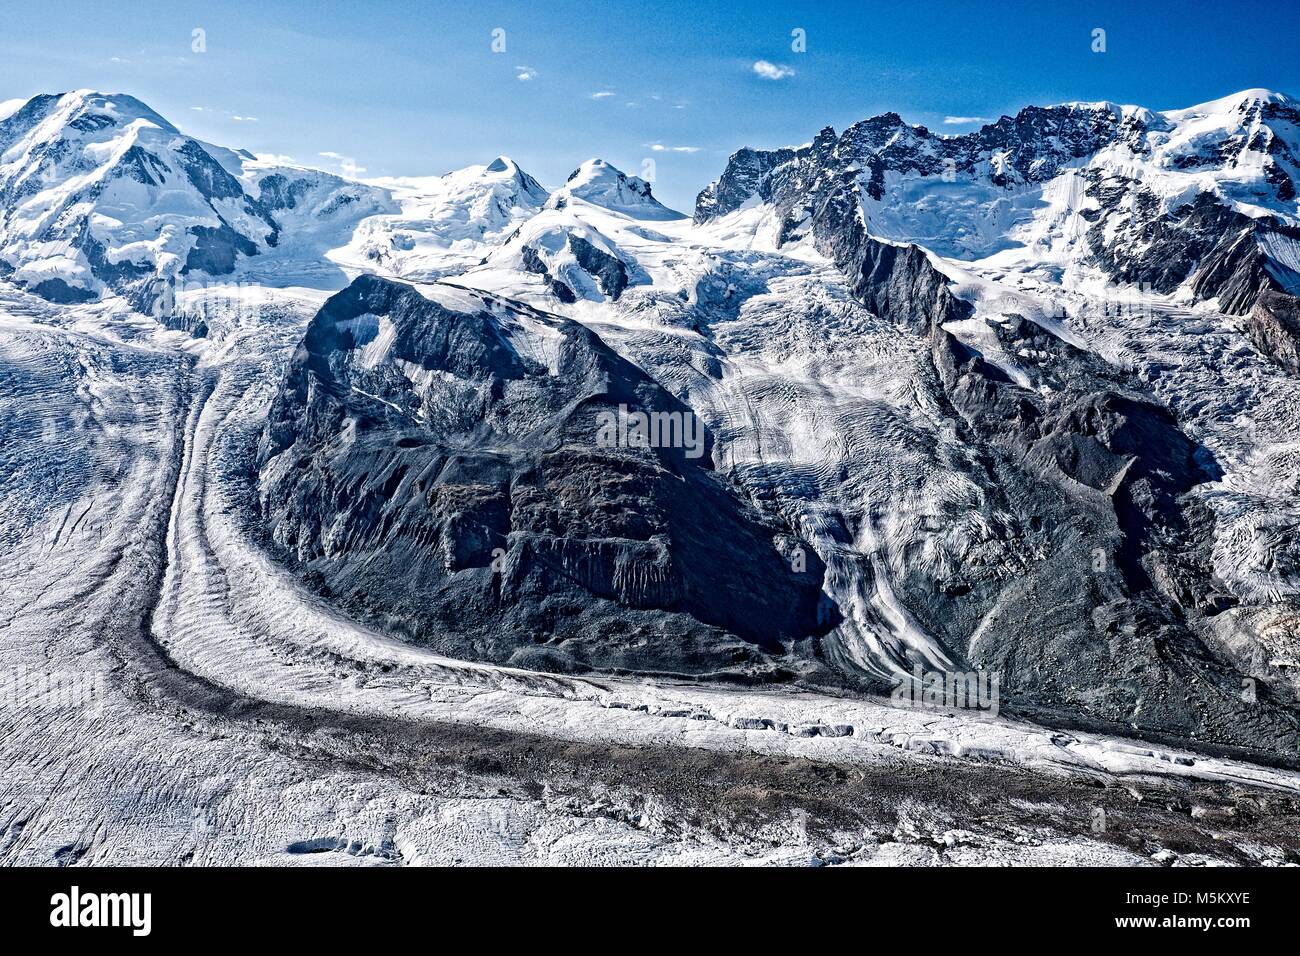 Come ghiaccio scende nella valle Gornergletscher essa porta con sé le rocce che sono state erose e ora sono trasportati come morene. Foto Stock